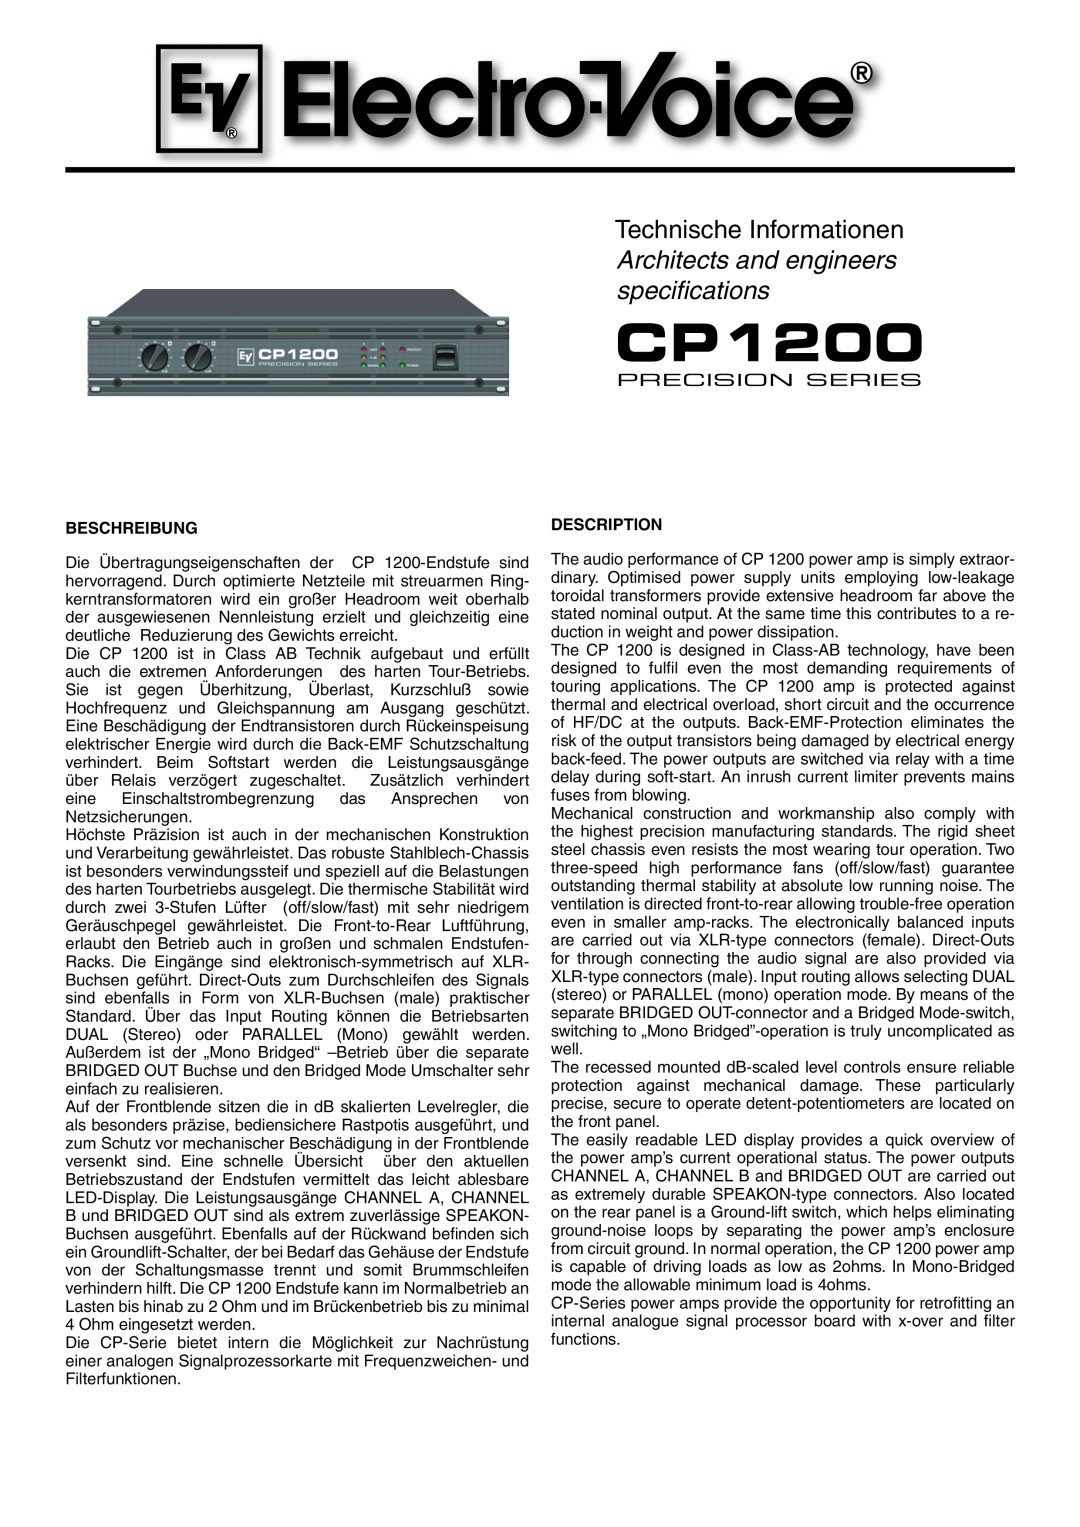 Electro-Voice CP 1200 manual Beschreibung, Description 